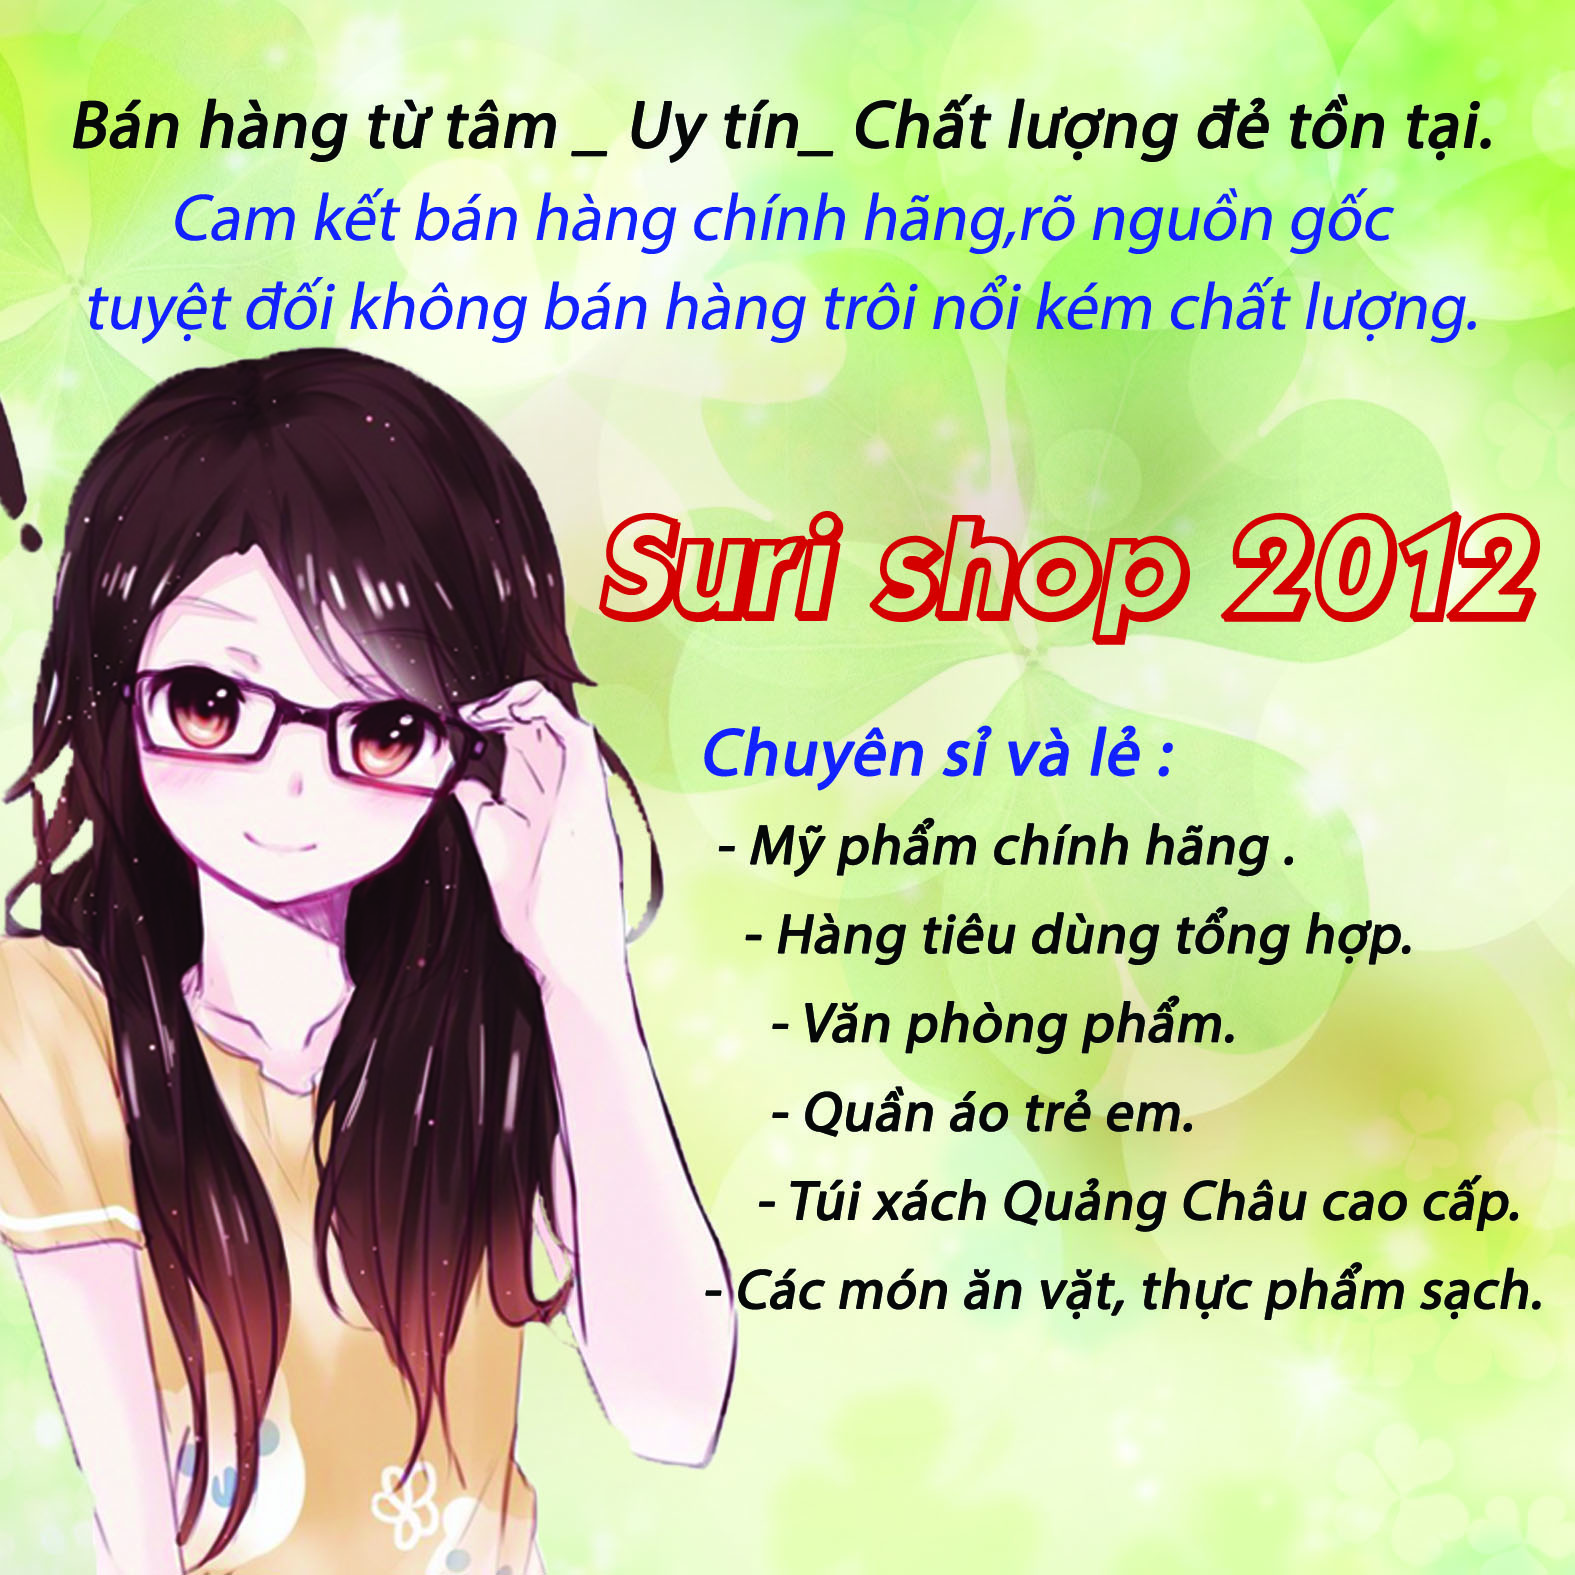 Suri shop-Bảo Vy